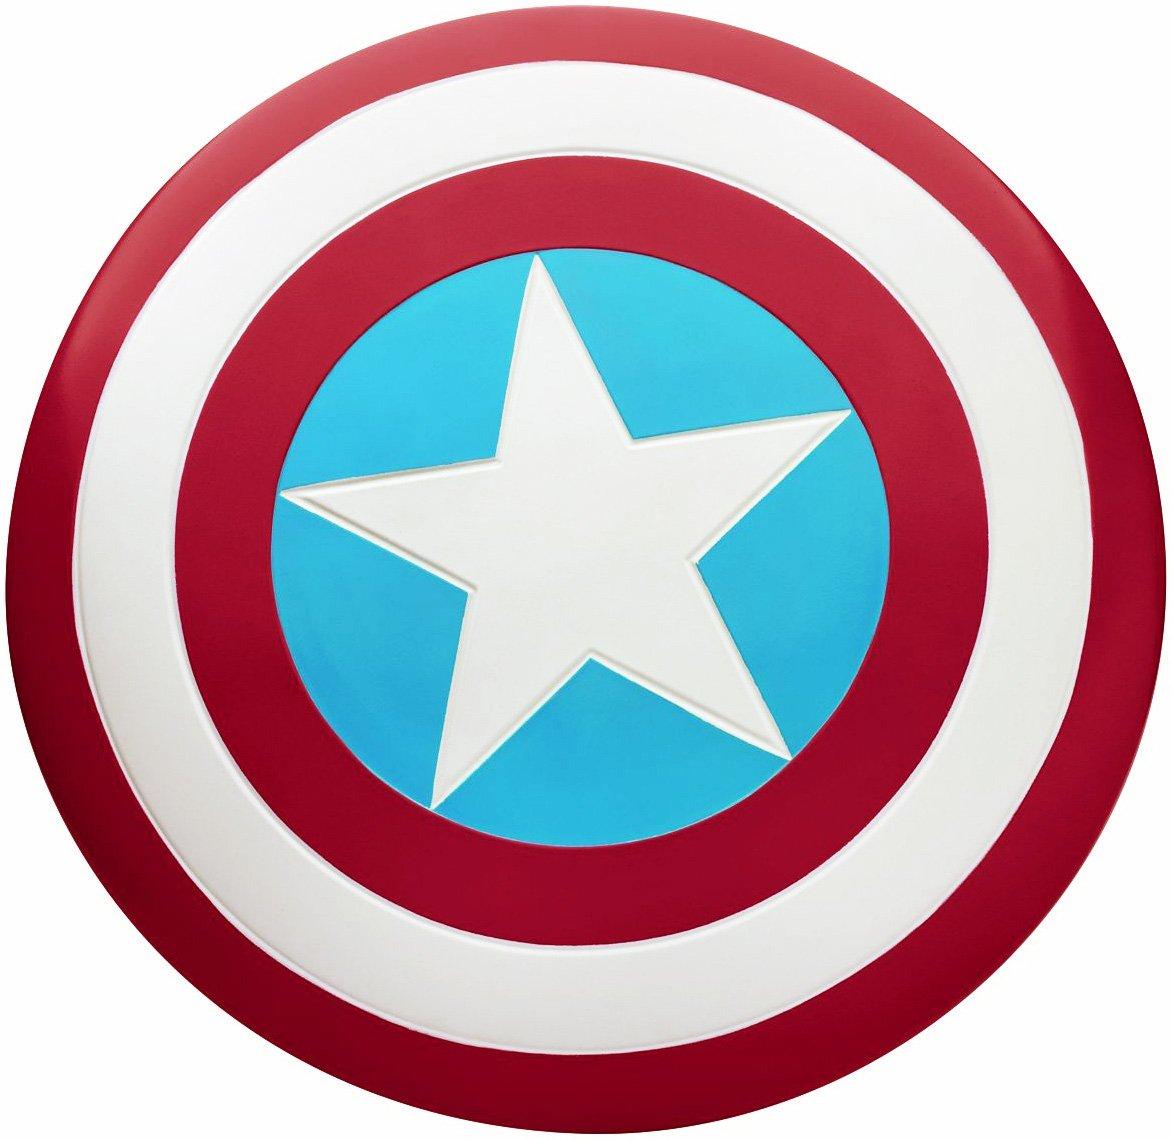 Captain america shield clipart